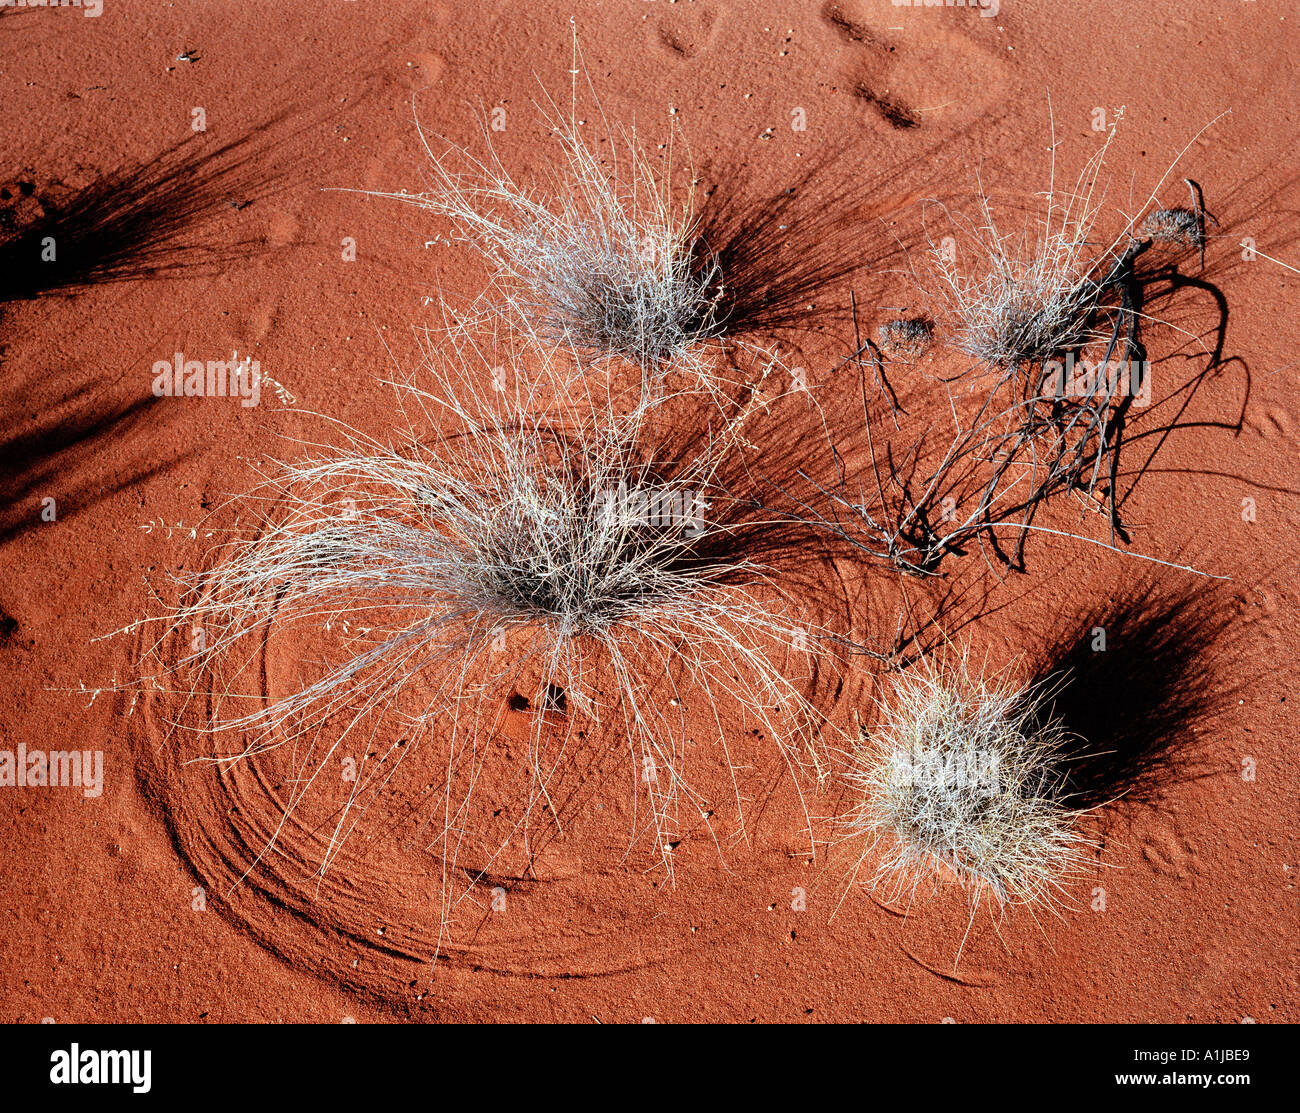 Spiniflex im Wind weht und hinterlässt Spuren im Wüstensand Ayers Rock Northern Territories Australien Stockfoto